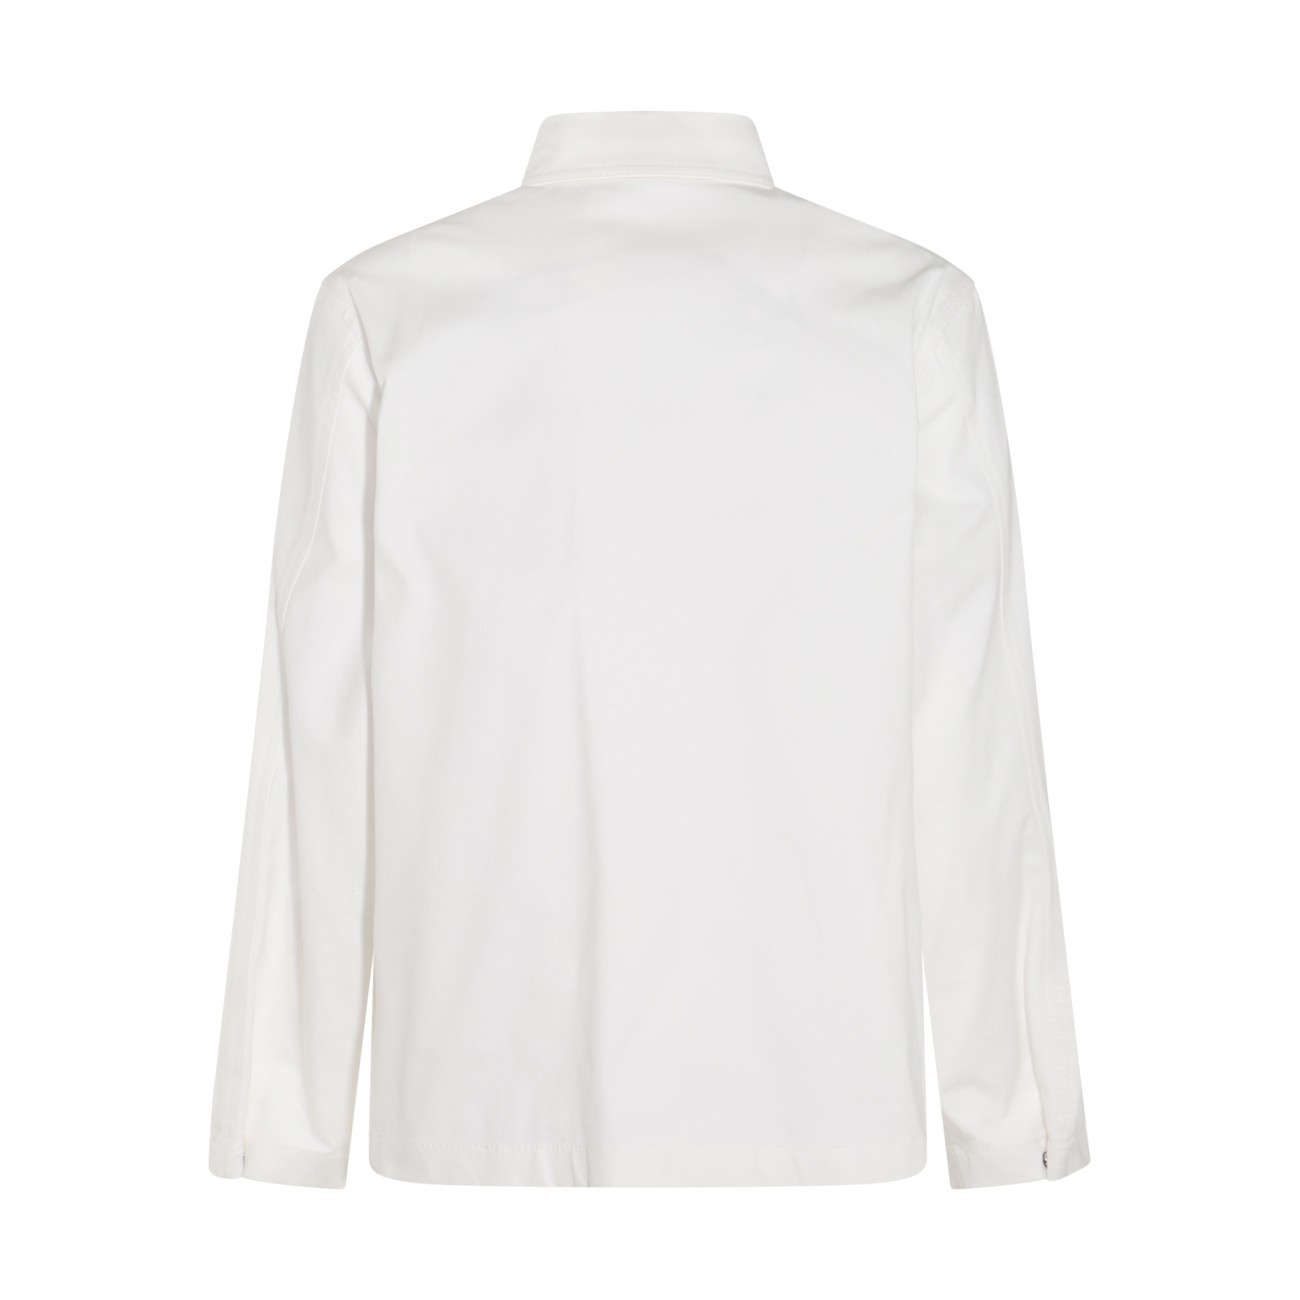 white cotton blend shirt - 2